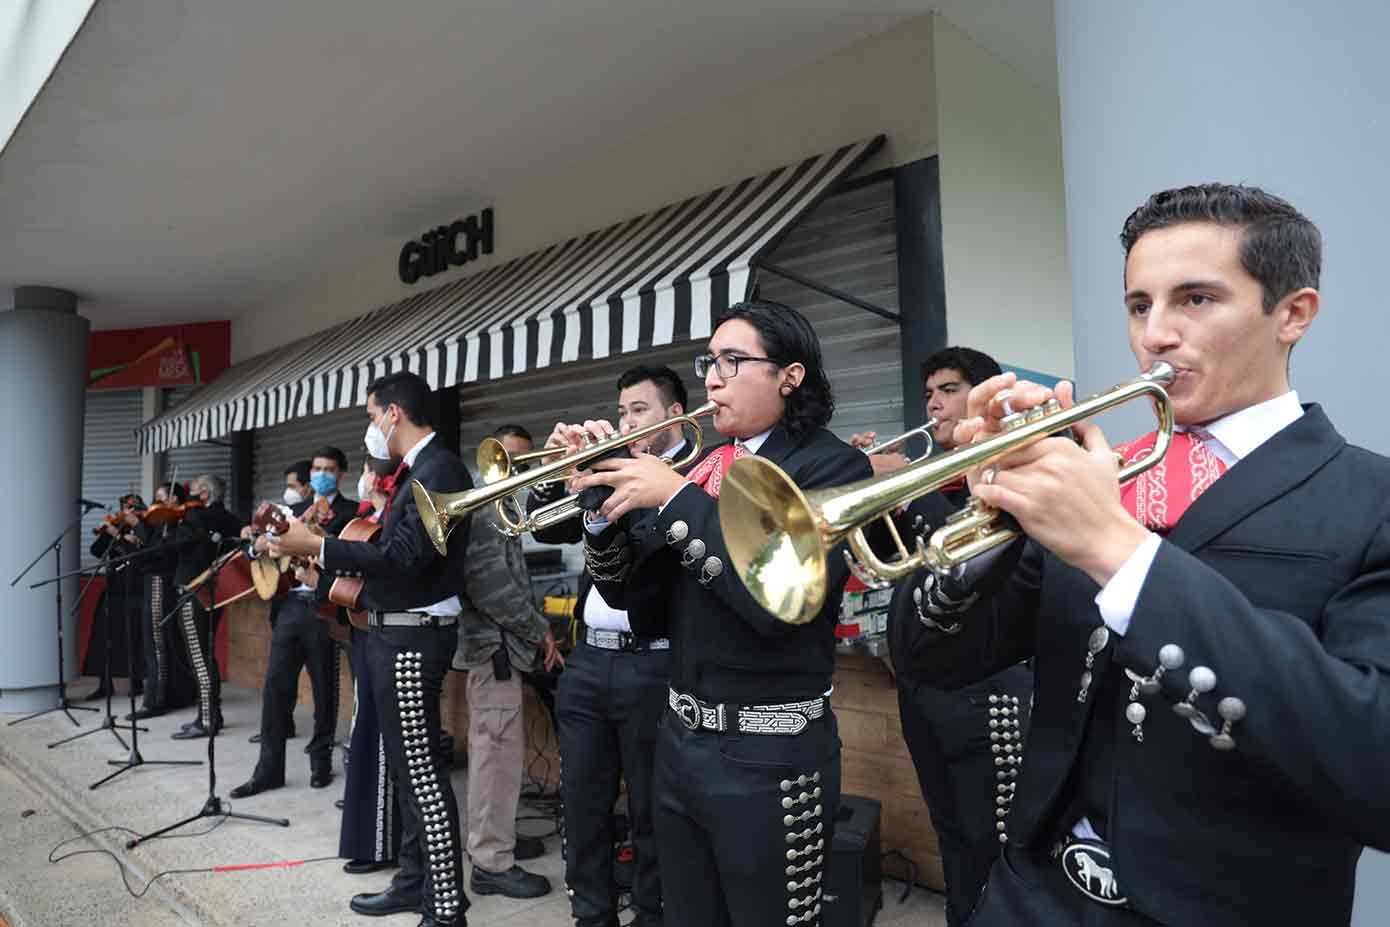 Celebración del aniversario 78 del Tec en PrepaTec Guadalajara y PrepaTec Santa Anita.